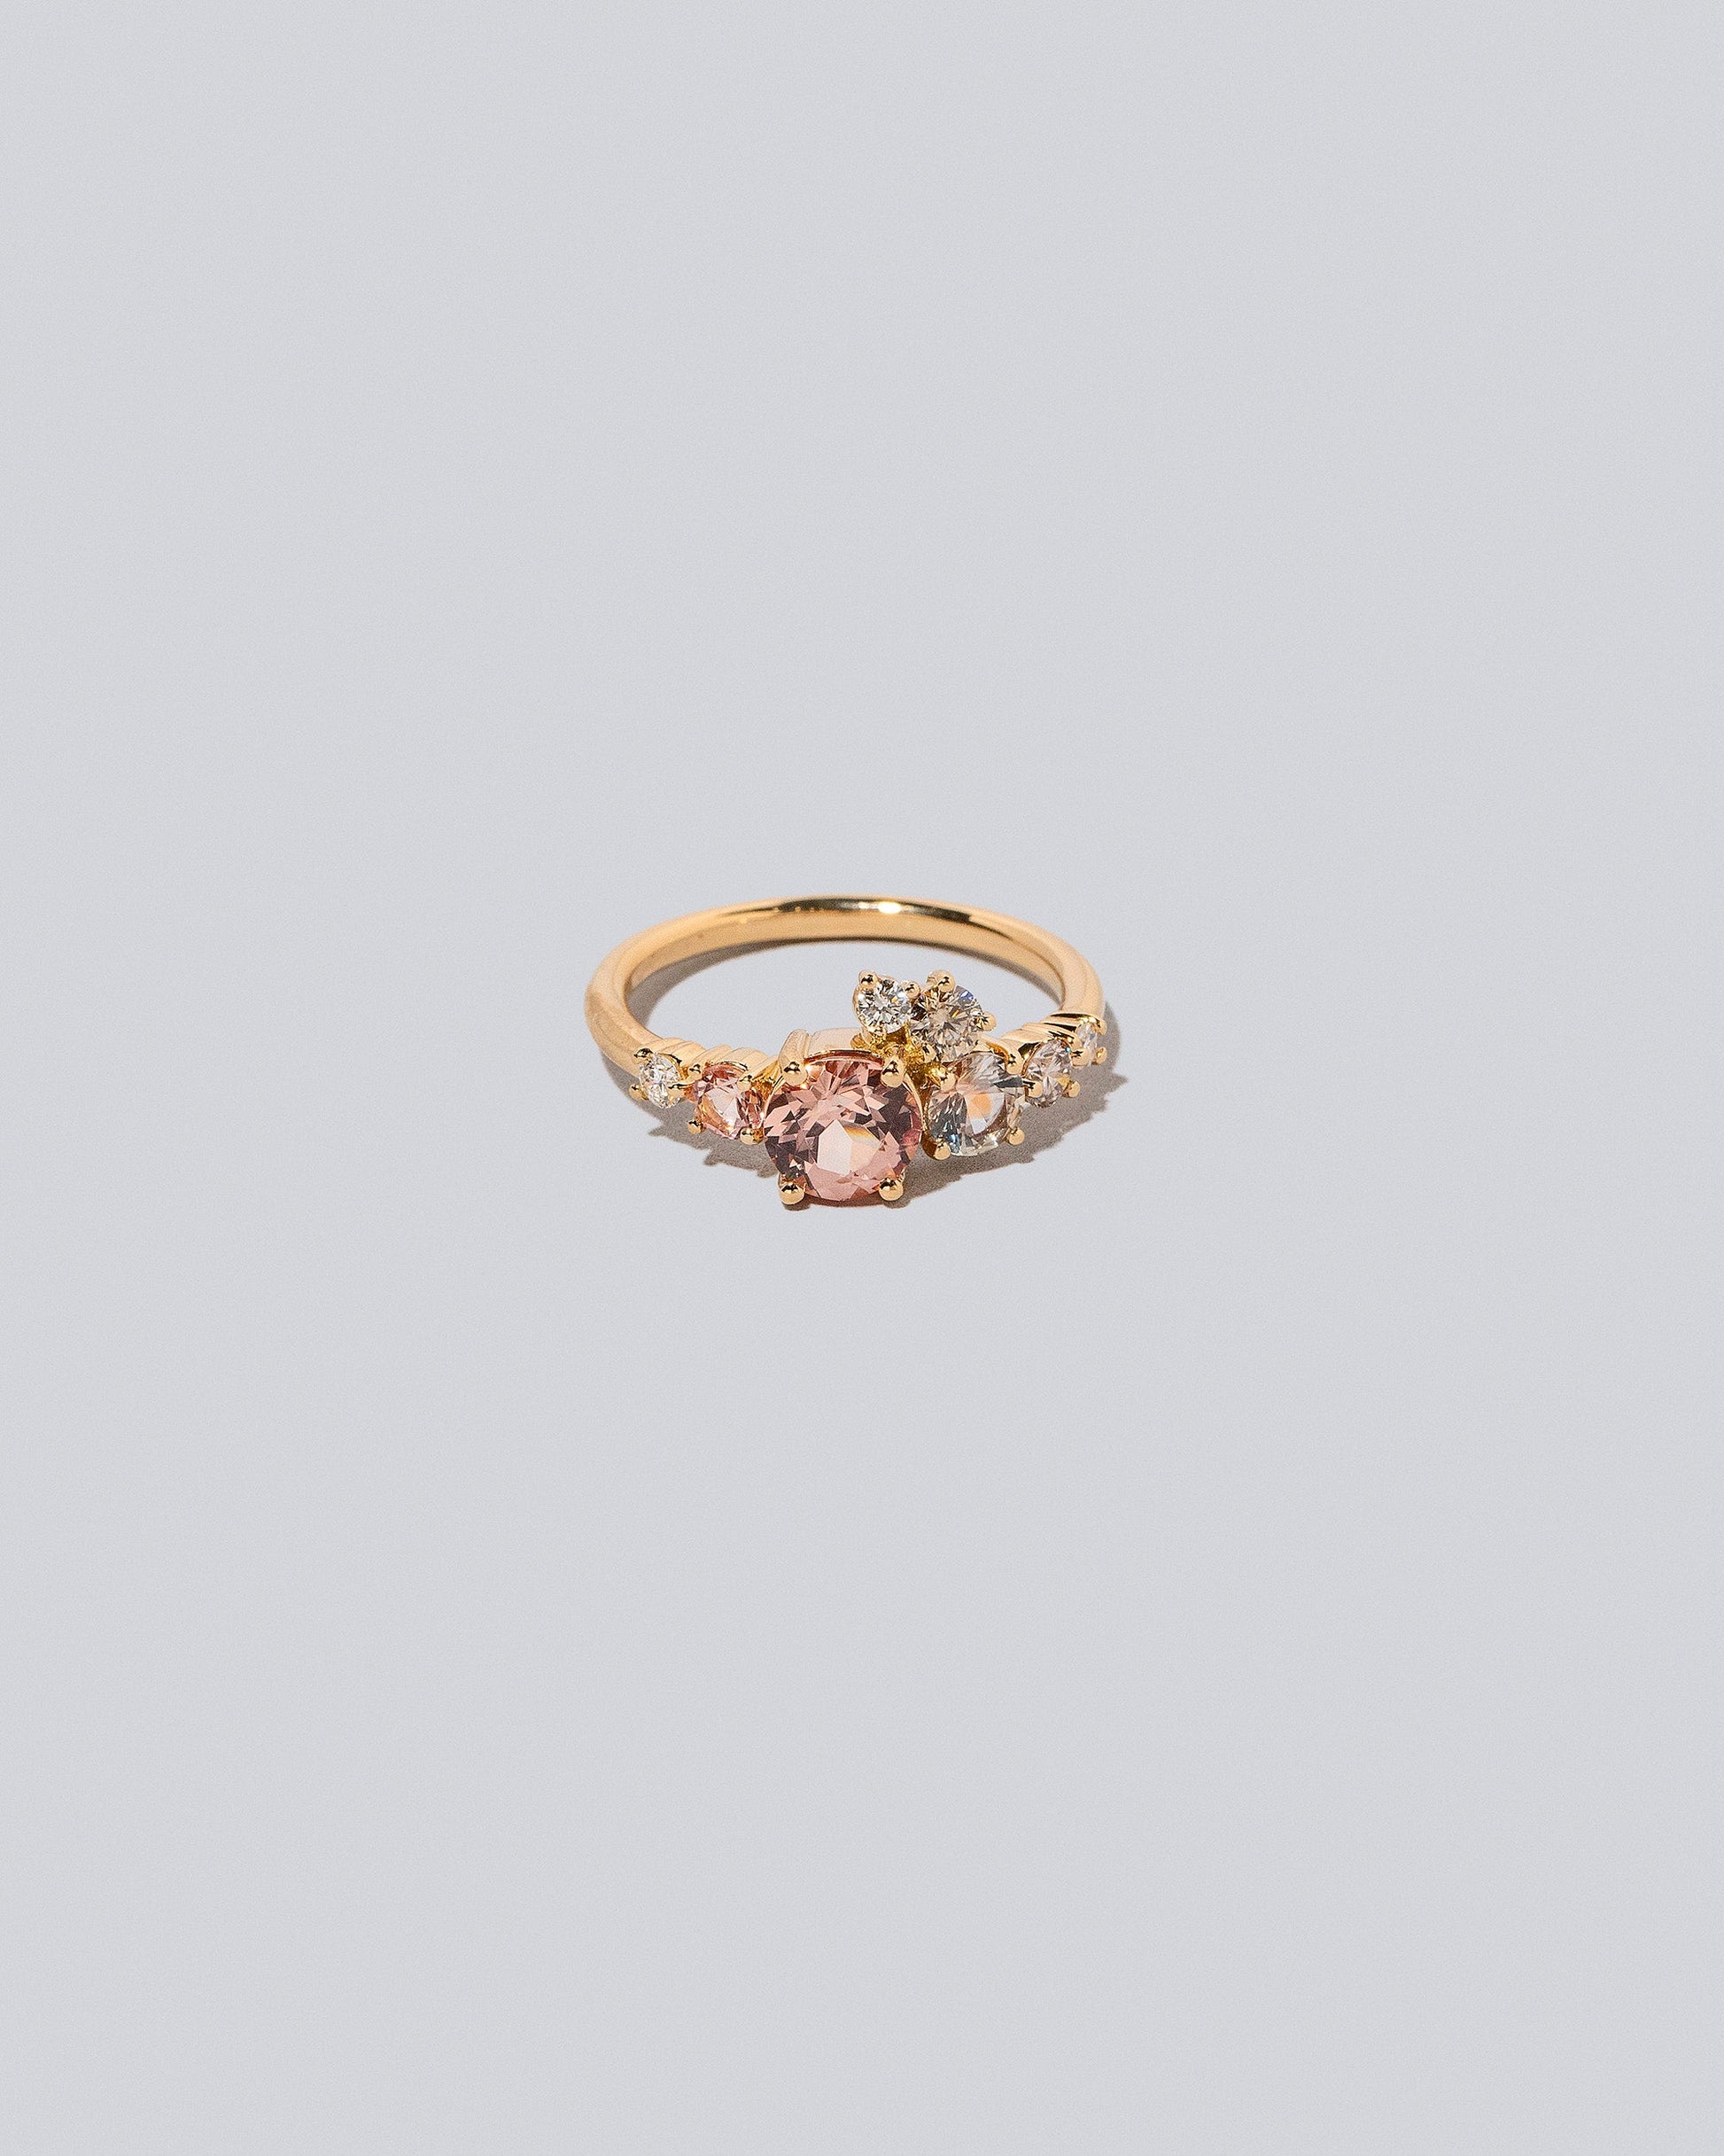 Lotus Garnet Luna Ring on light colored background.